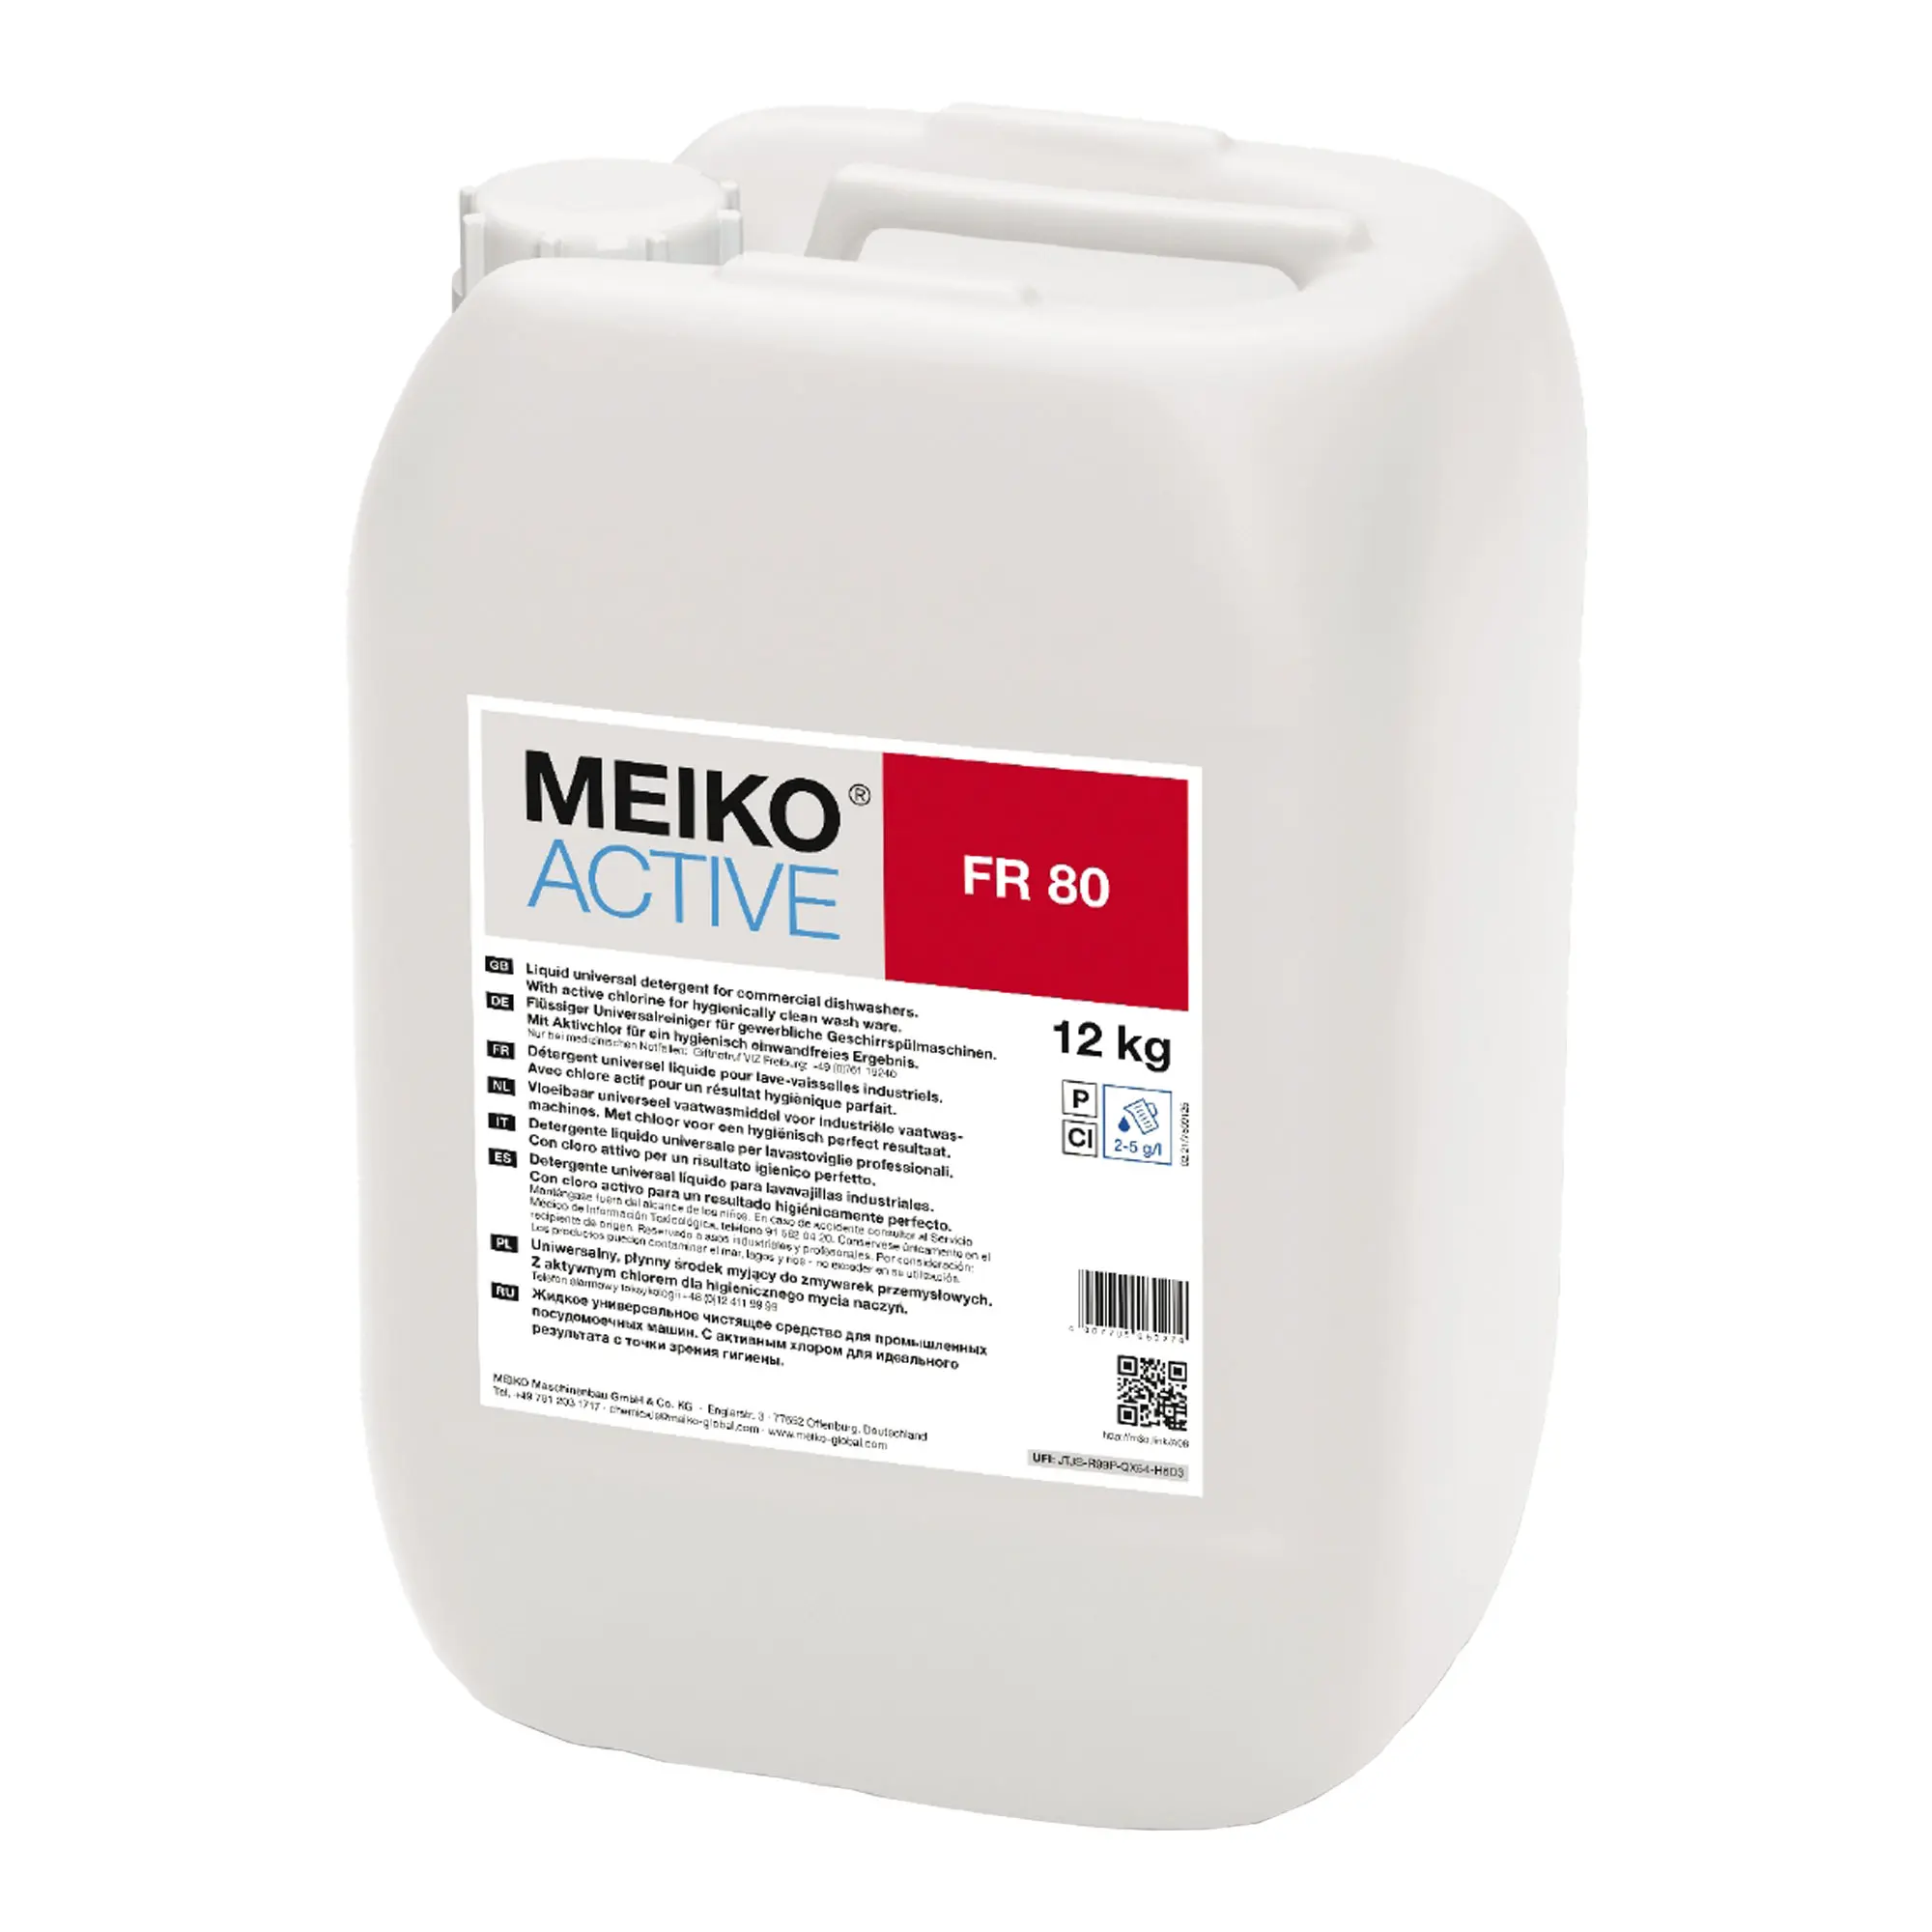 Meiko Active FR 80 flüssiger Universalreiniger für Geschirrspülmaschinen